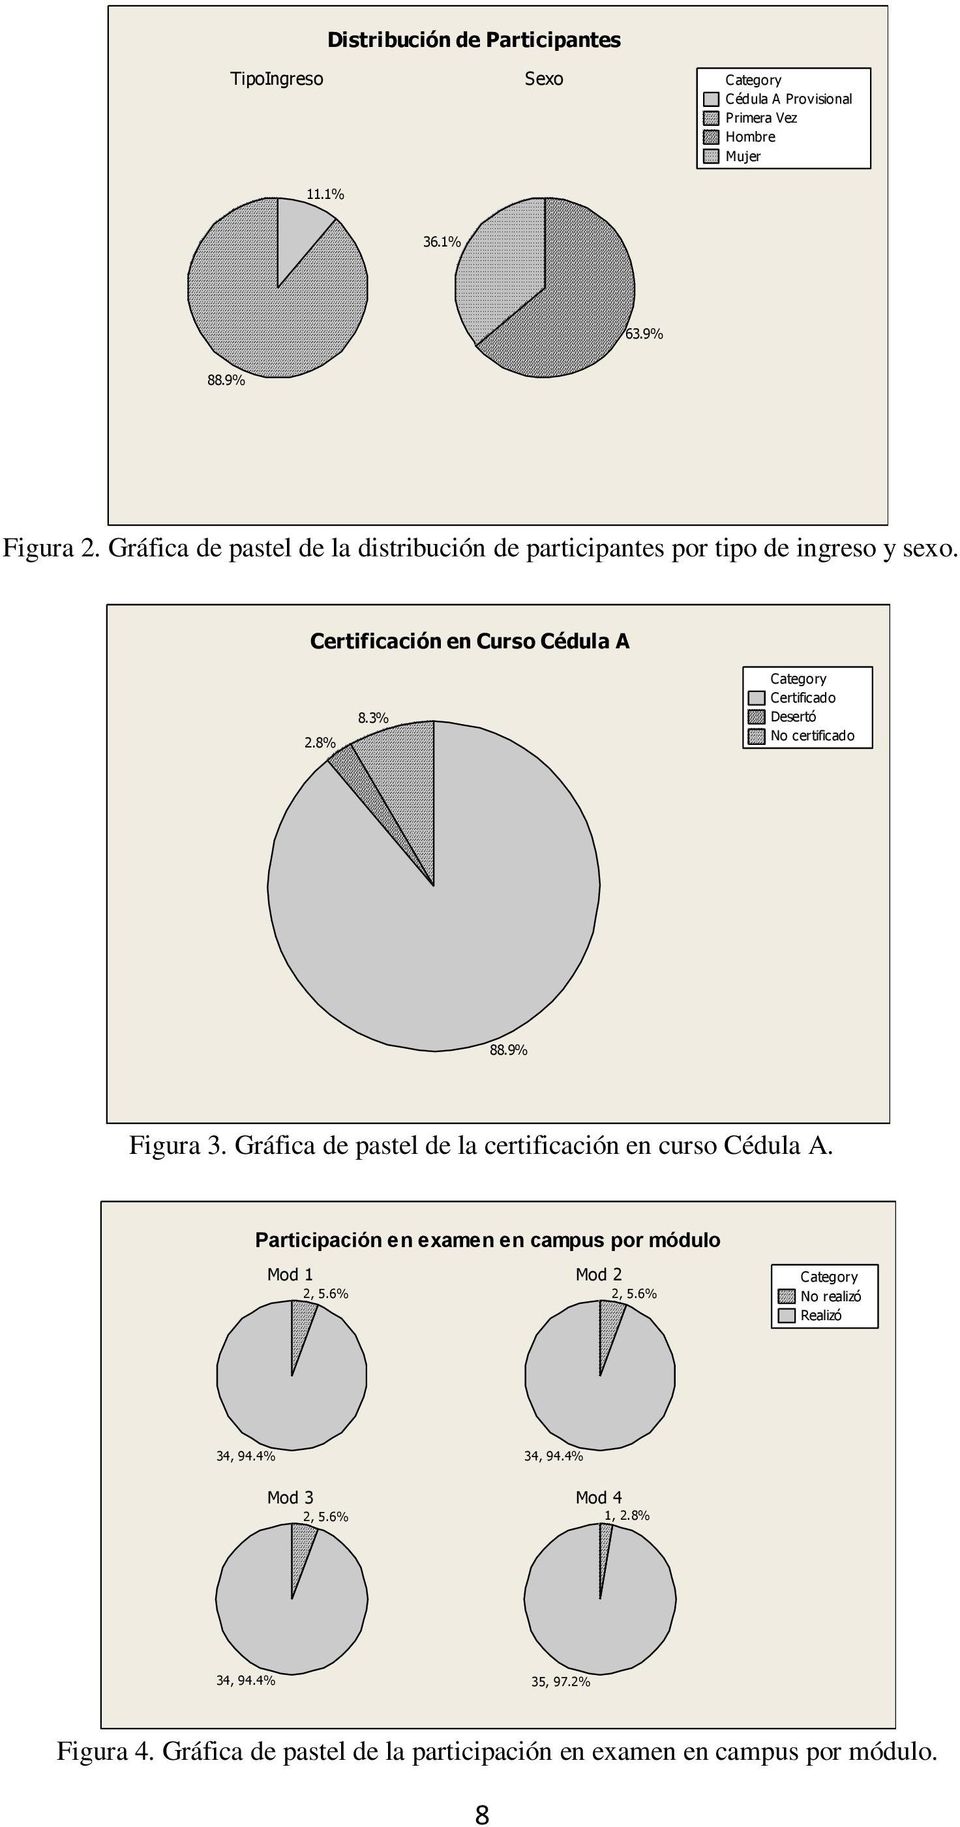 3% Category Certificado Desertó No certificado 88.9% Figura 3. Gráfica de pastel de la certificación en curso Cédula A.